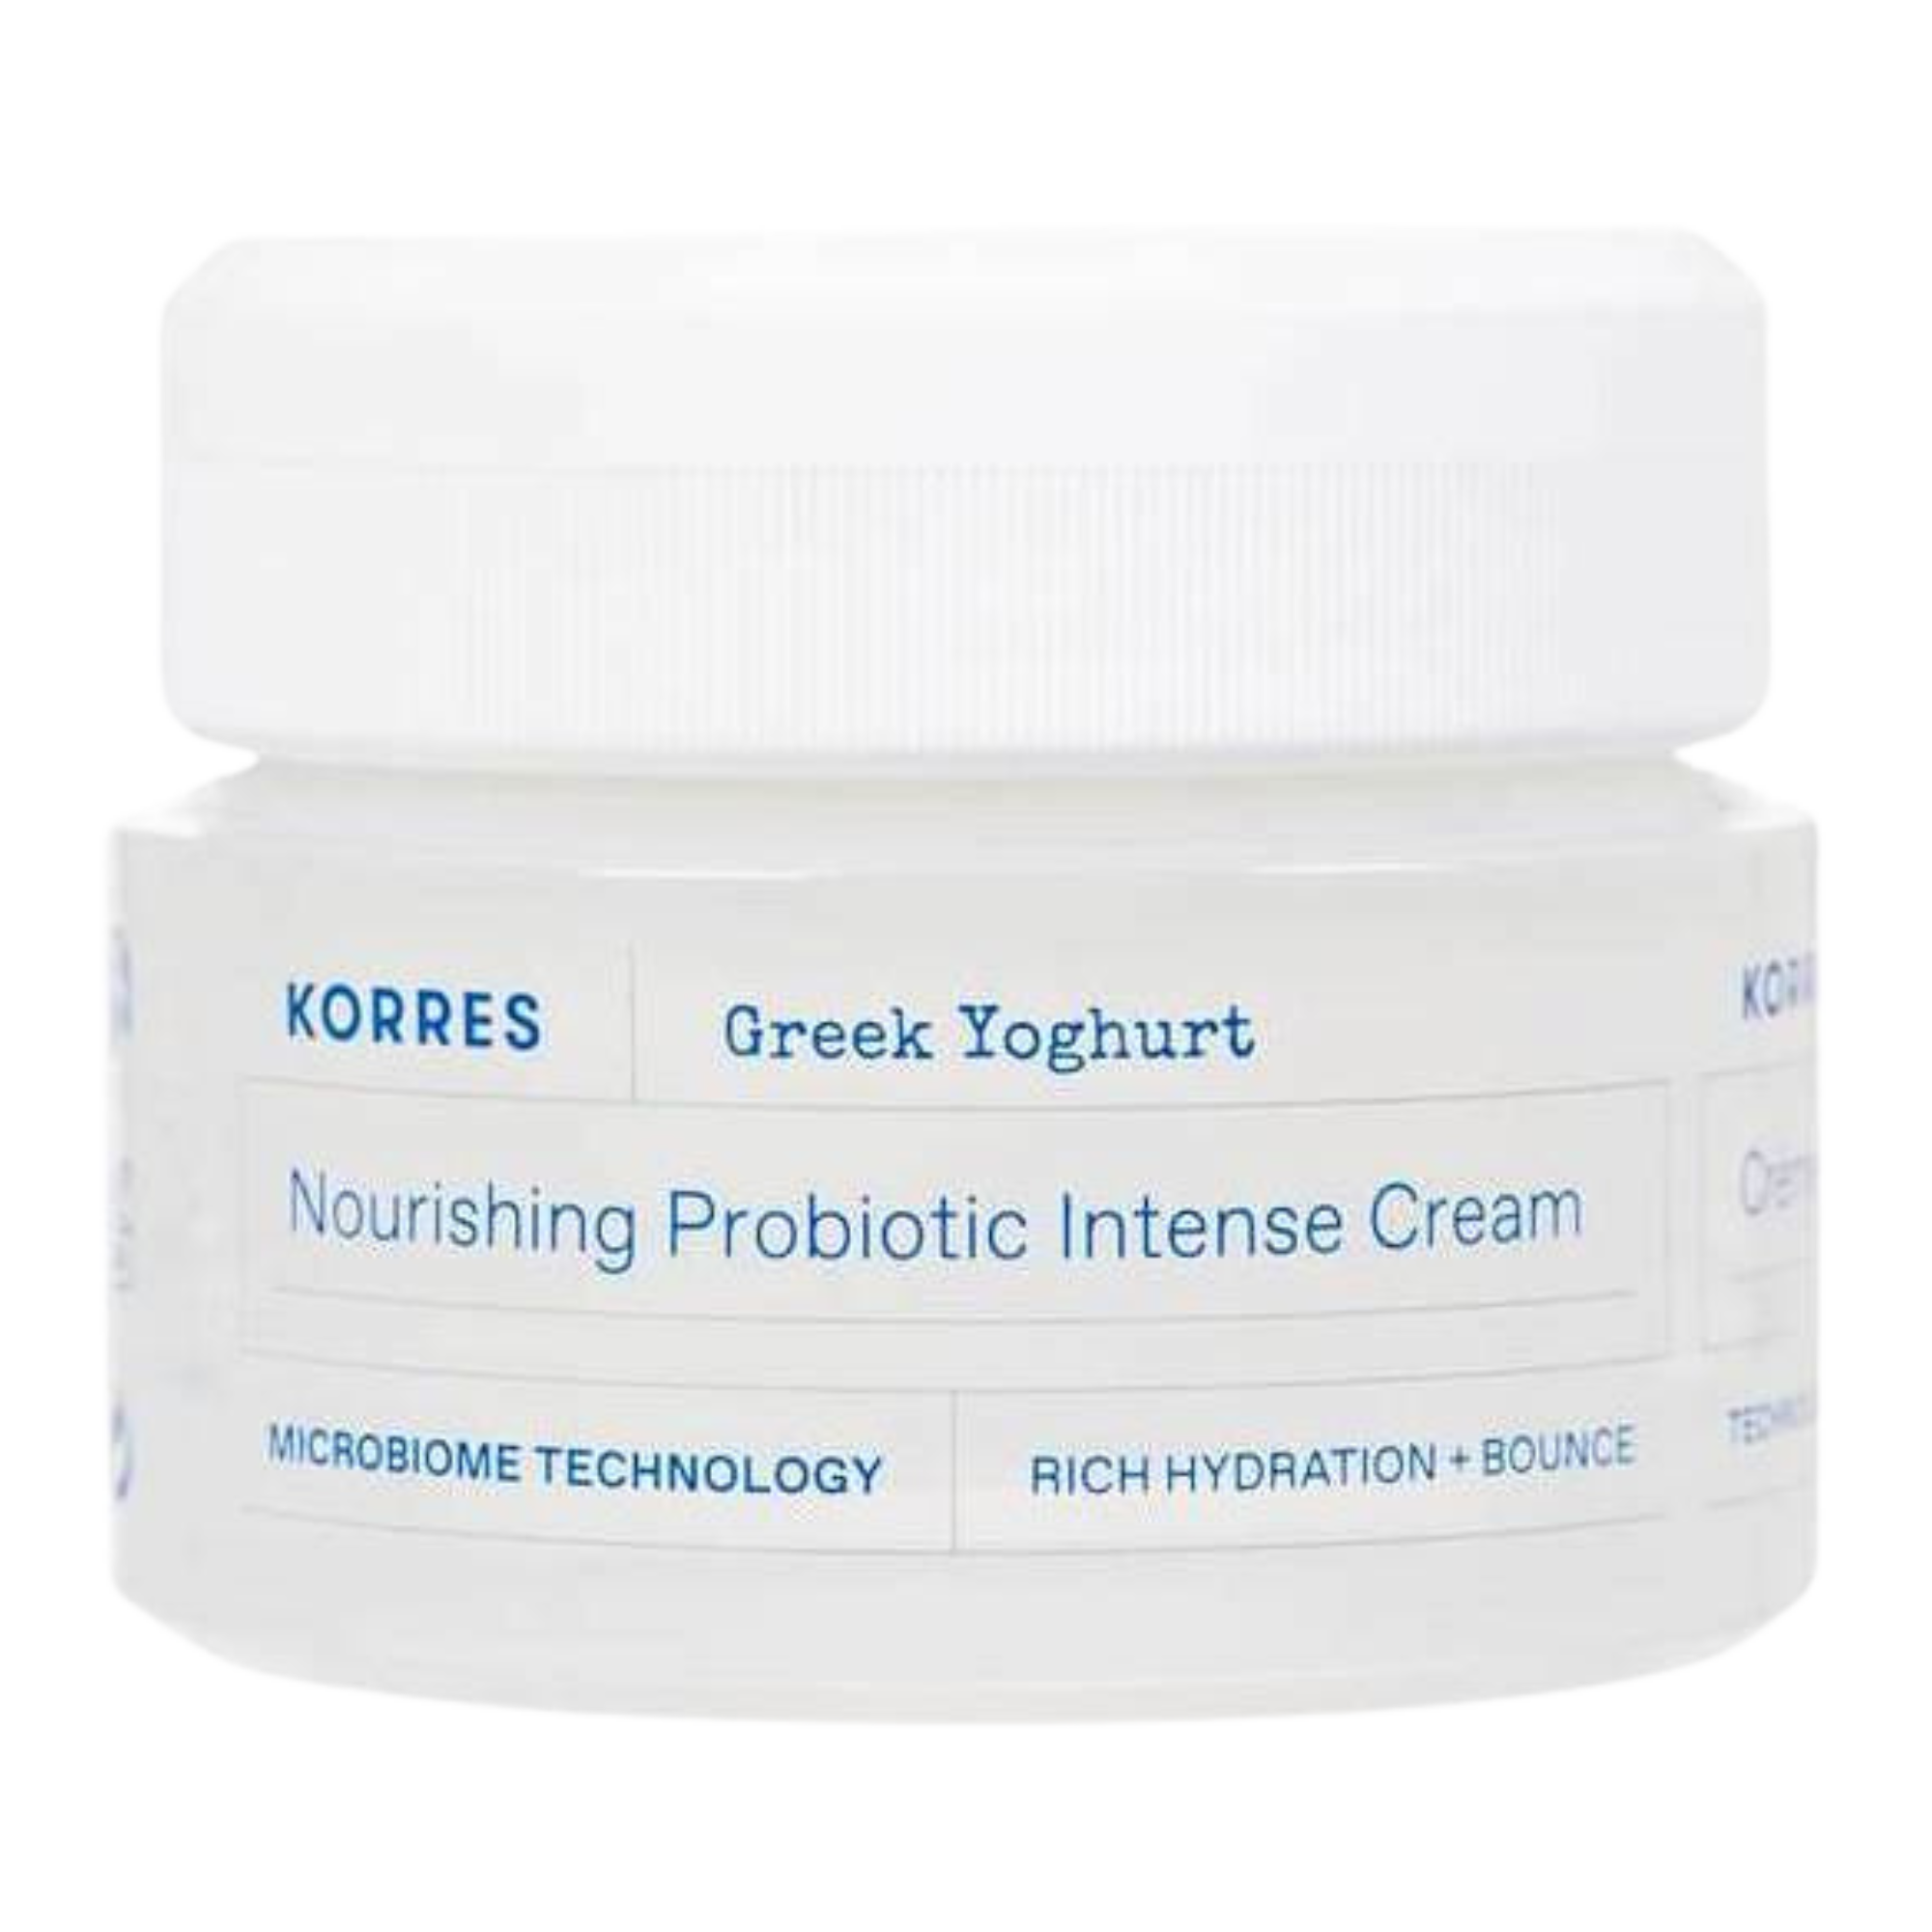 Korres Greek Yoghurt питательный крем для сухой кожи, 40 мл крем для сухой кожи korres greek yoghurt nourishing probiotic intense cream 40 мл